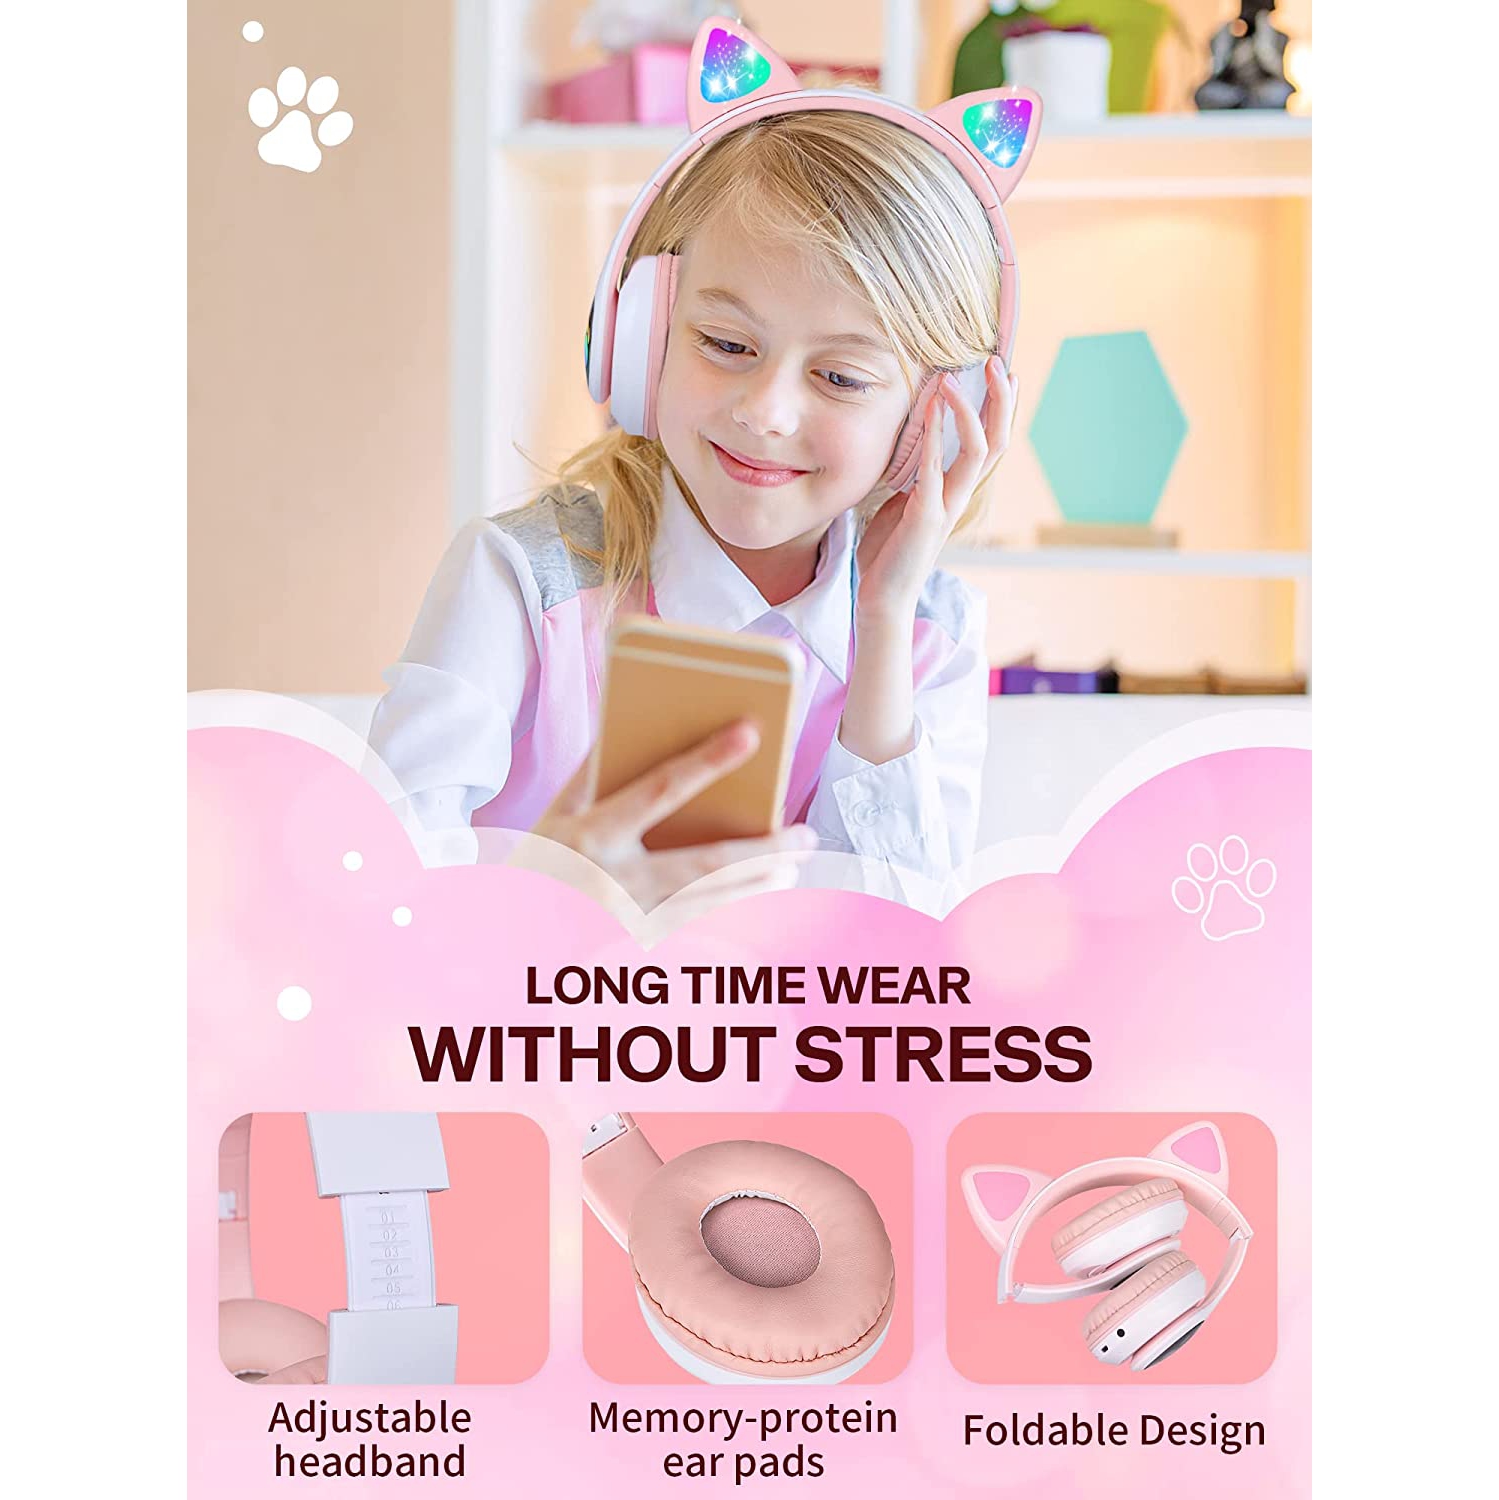 Cat Ear LED Casque Bluetooth pliable pour enfants, 2 en 1 filaire